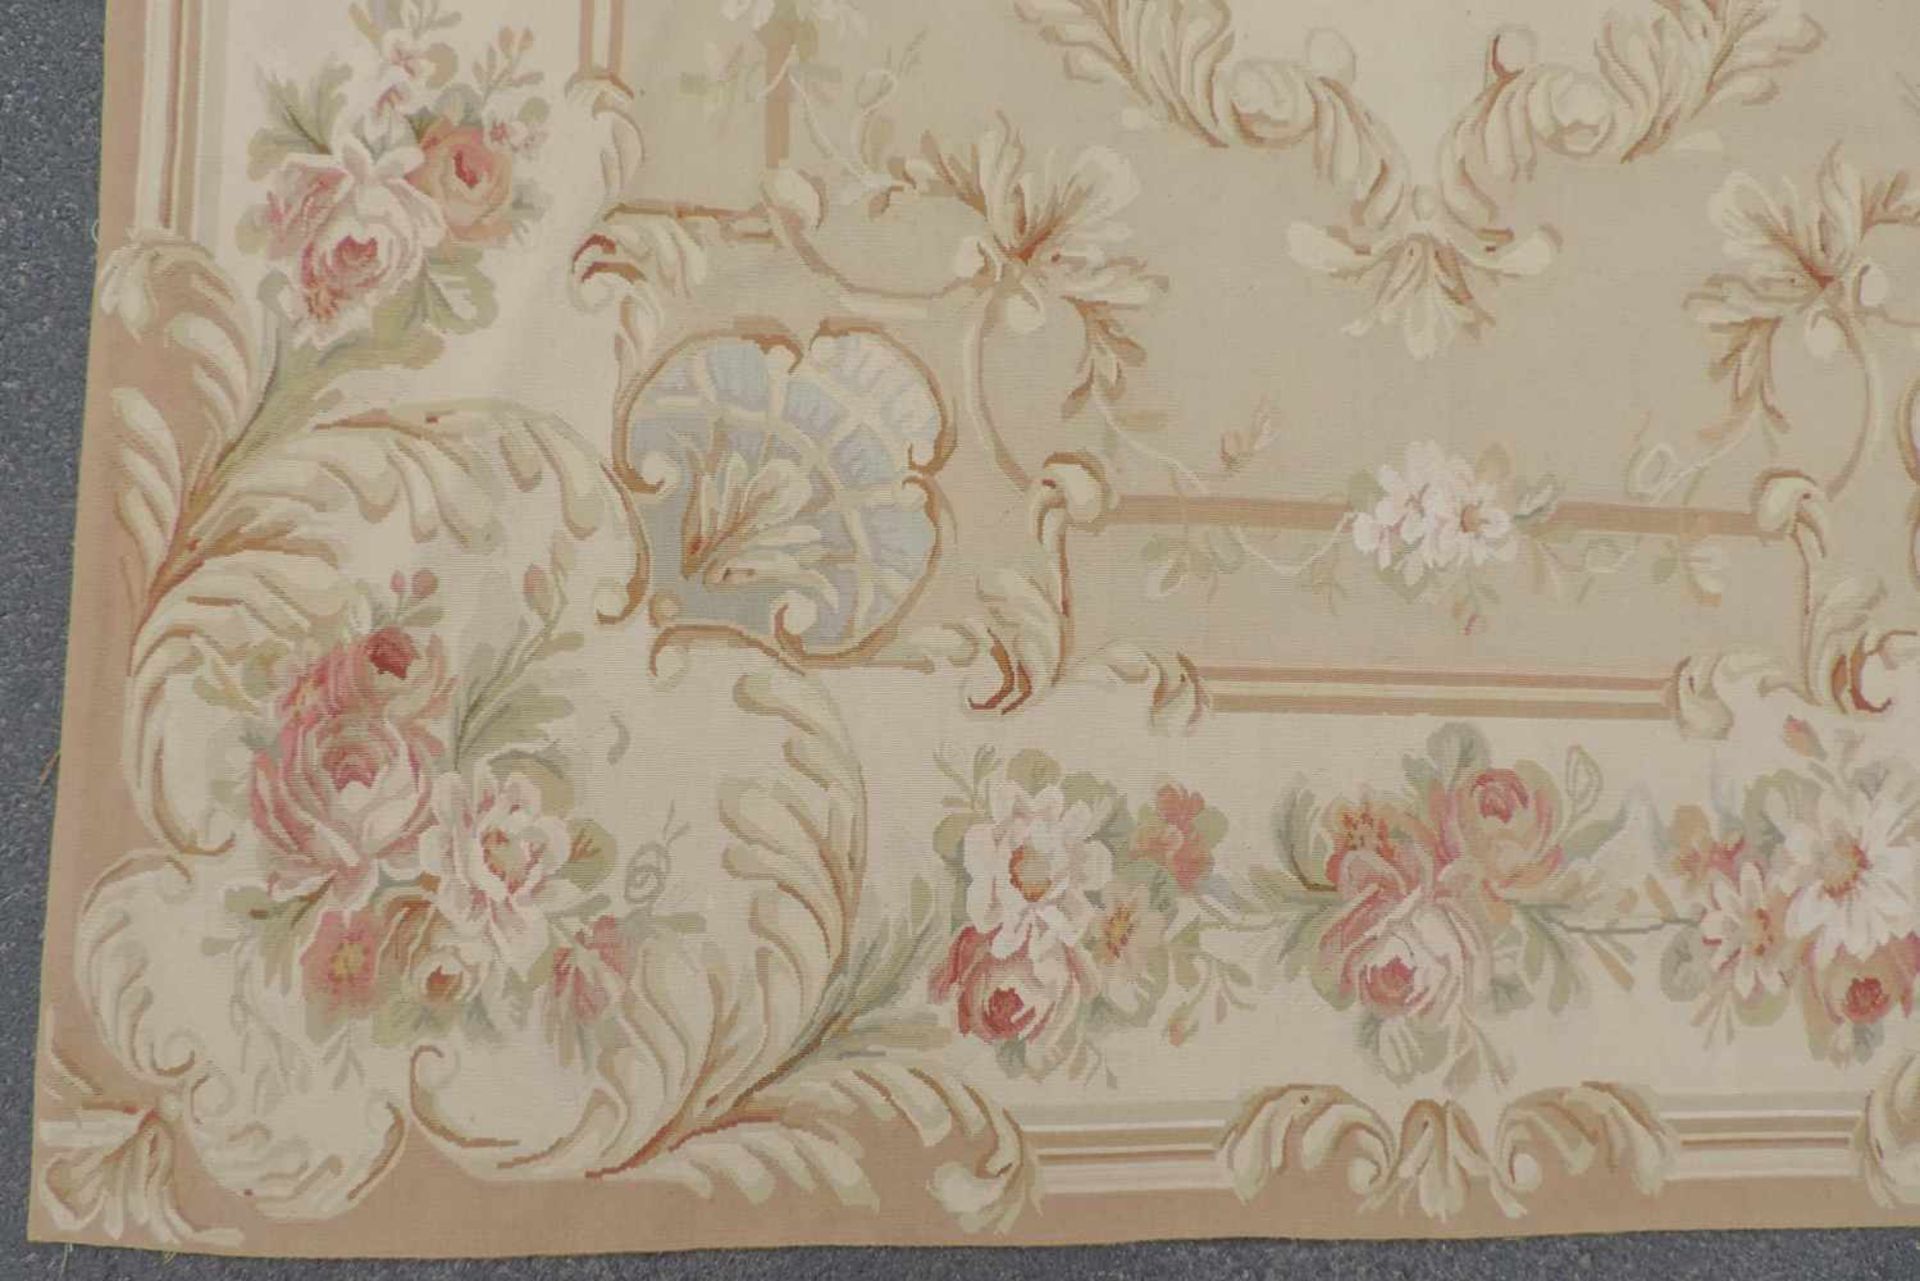 Tapis de Pied "Aubusson". Salonteppich.275 cm x 188 cm. Handgewebt. Wolle auf Wolle.Tapis de Pied " - Image 3 of 10